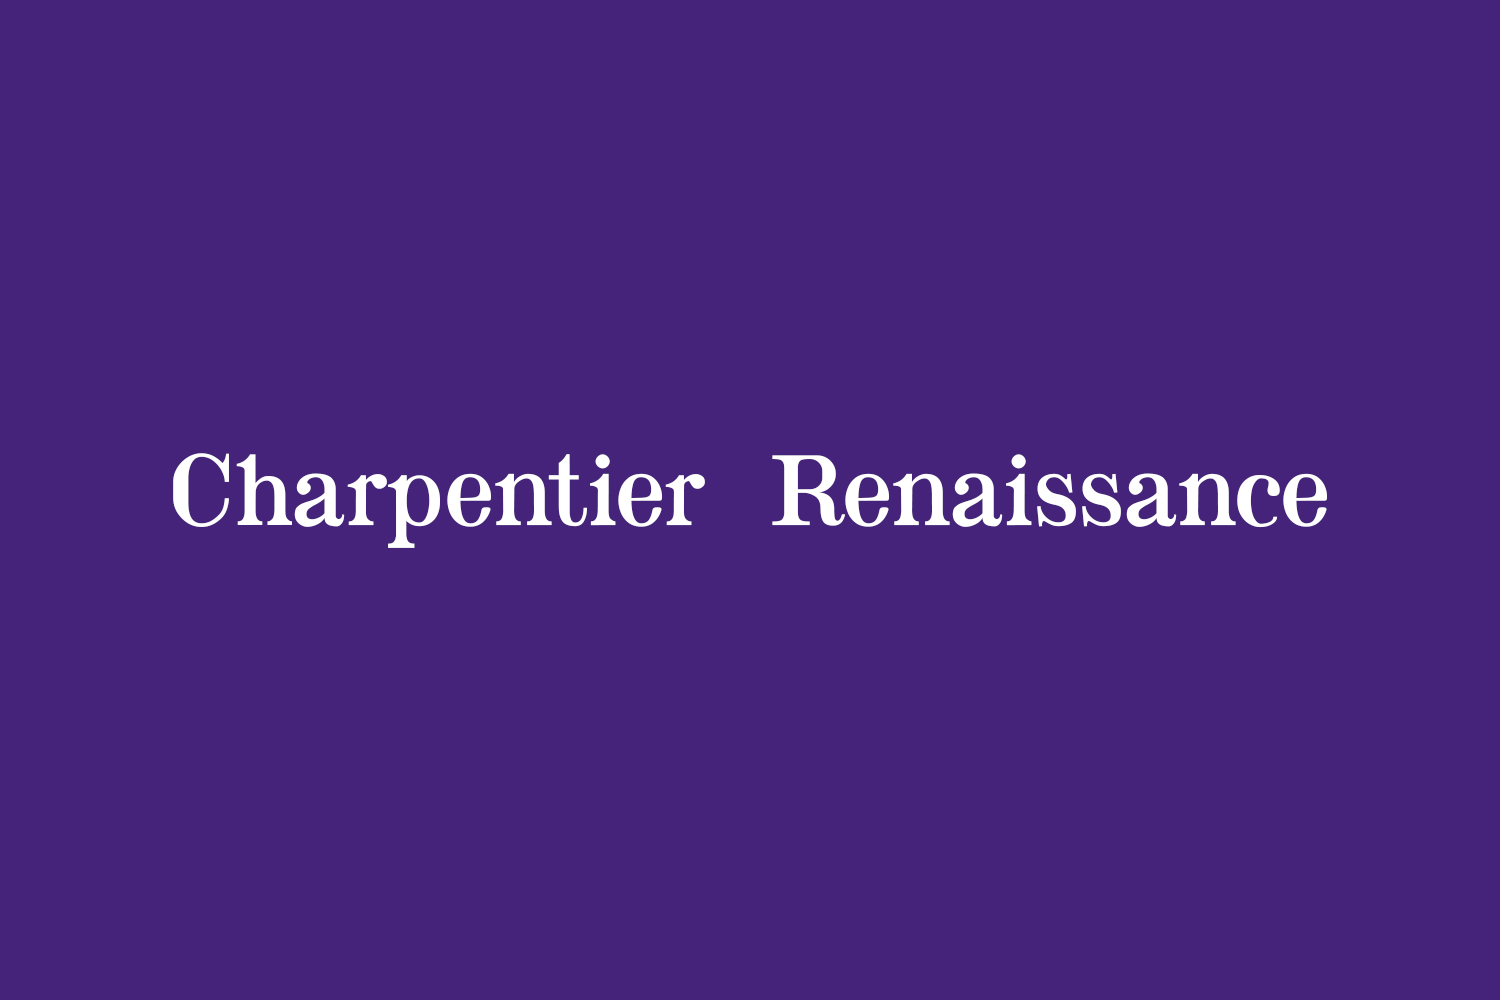 Charpentier Renaissance Free Font